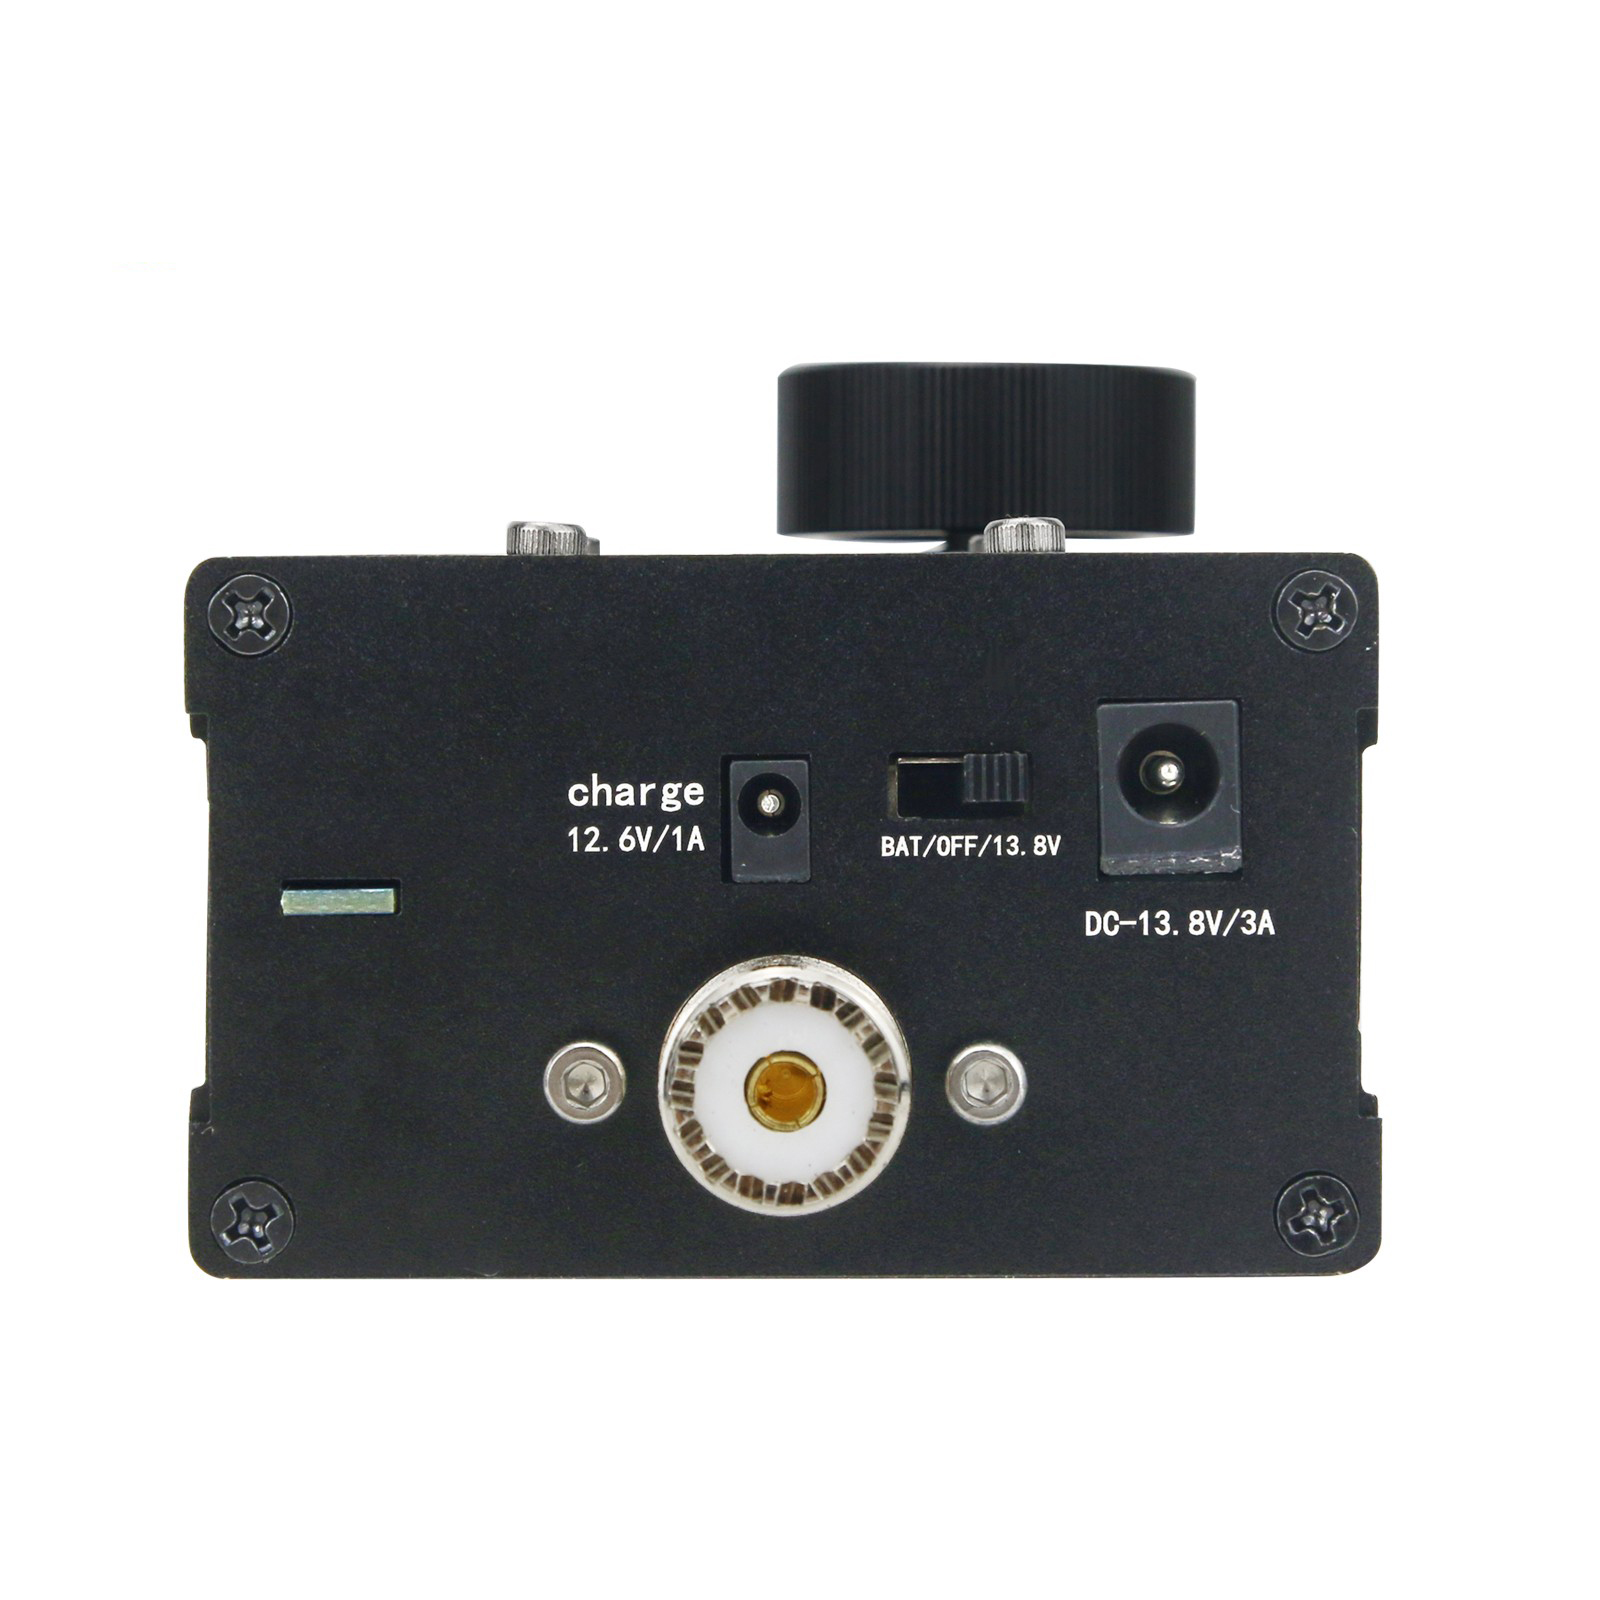 5W-Portable-uSDX-8-Band-SDR-All-Mode-Transceiver-USB-LSB-CW-AM-FM-HF-SSB-QRP-Transceiver-QCX-SSB-wit-1890124-5